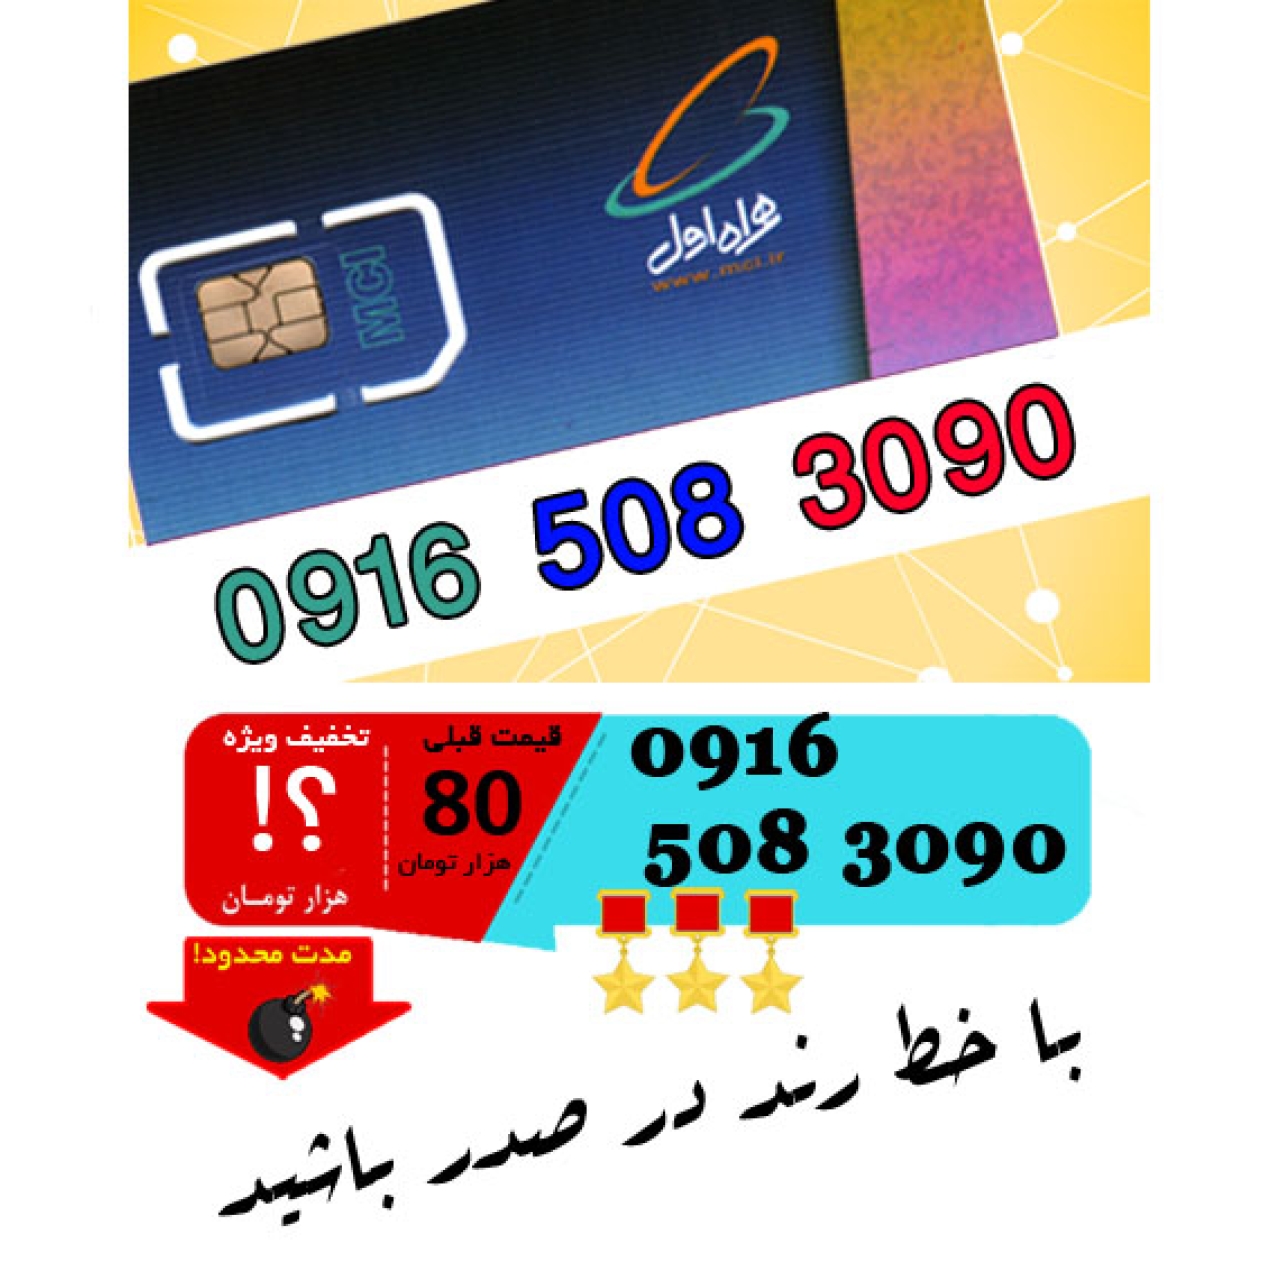 سیم کارت اعتباری رند همراه اول 09165083090